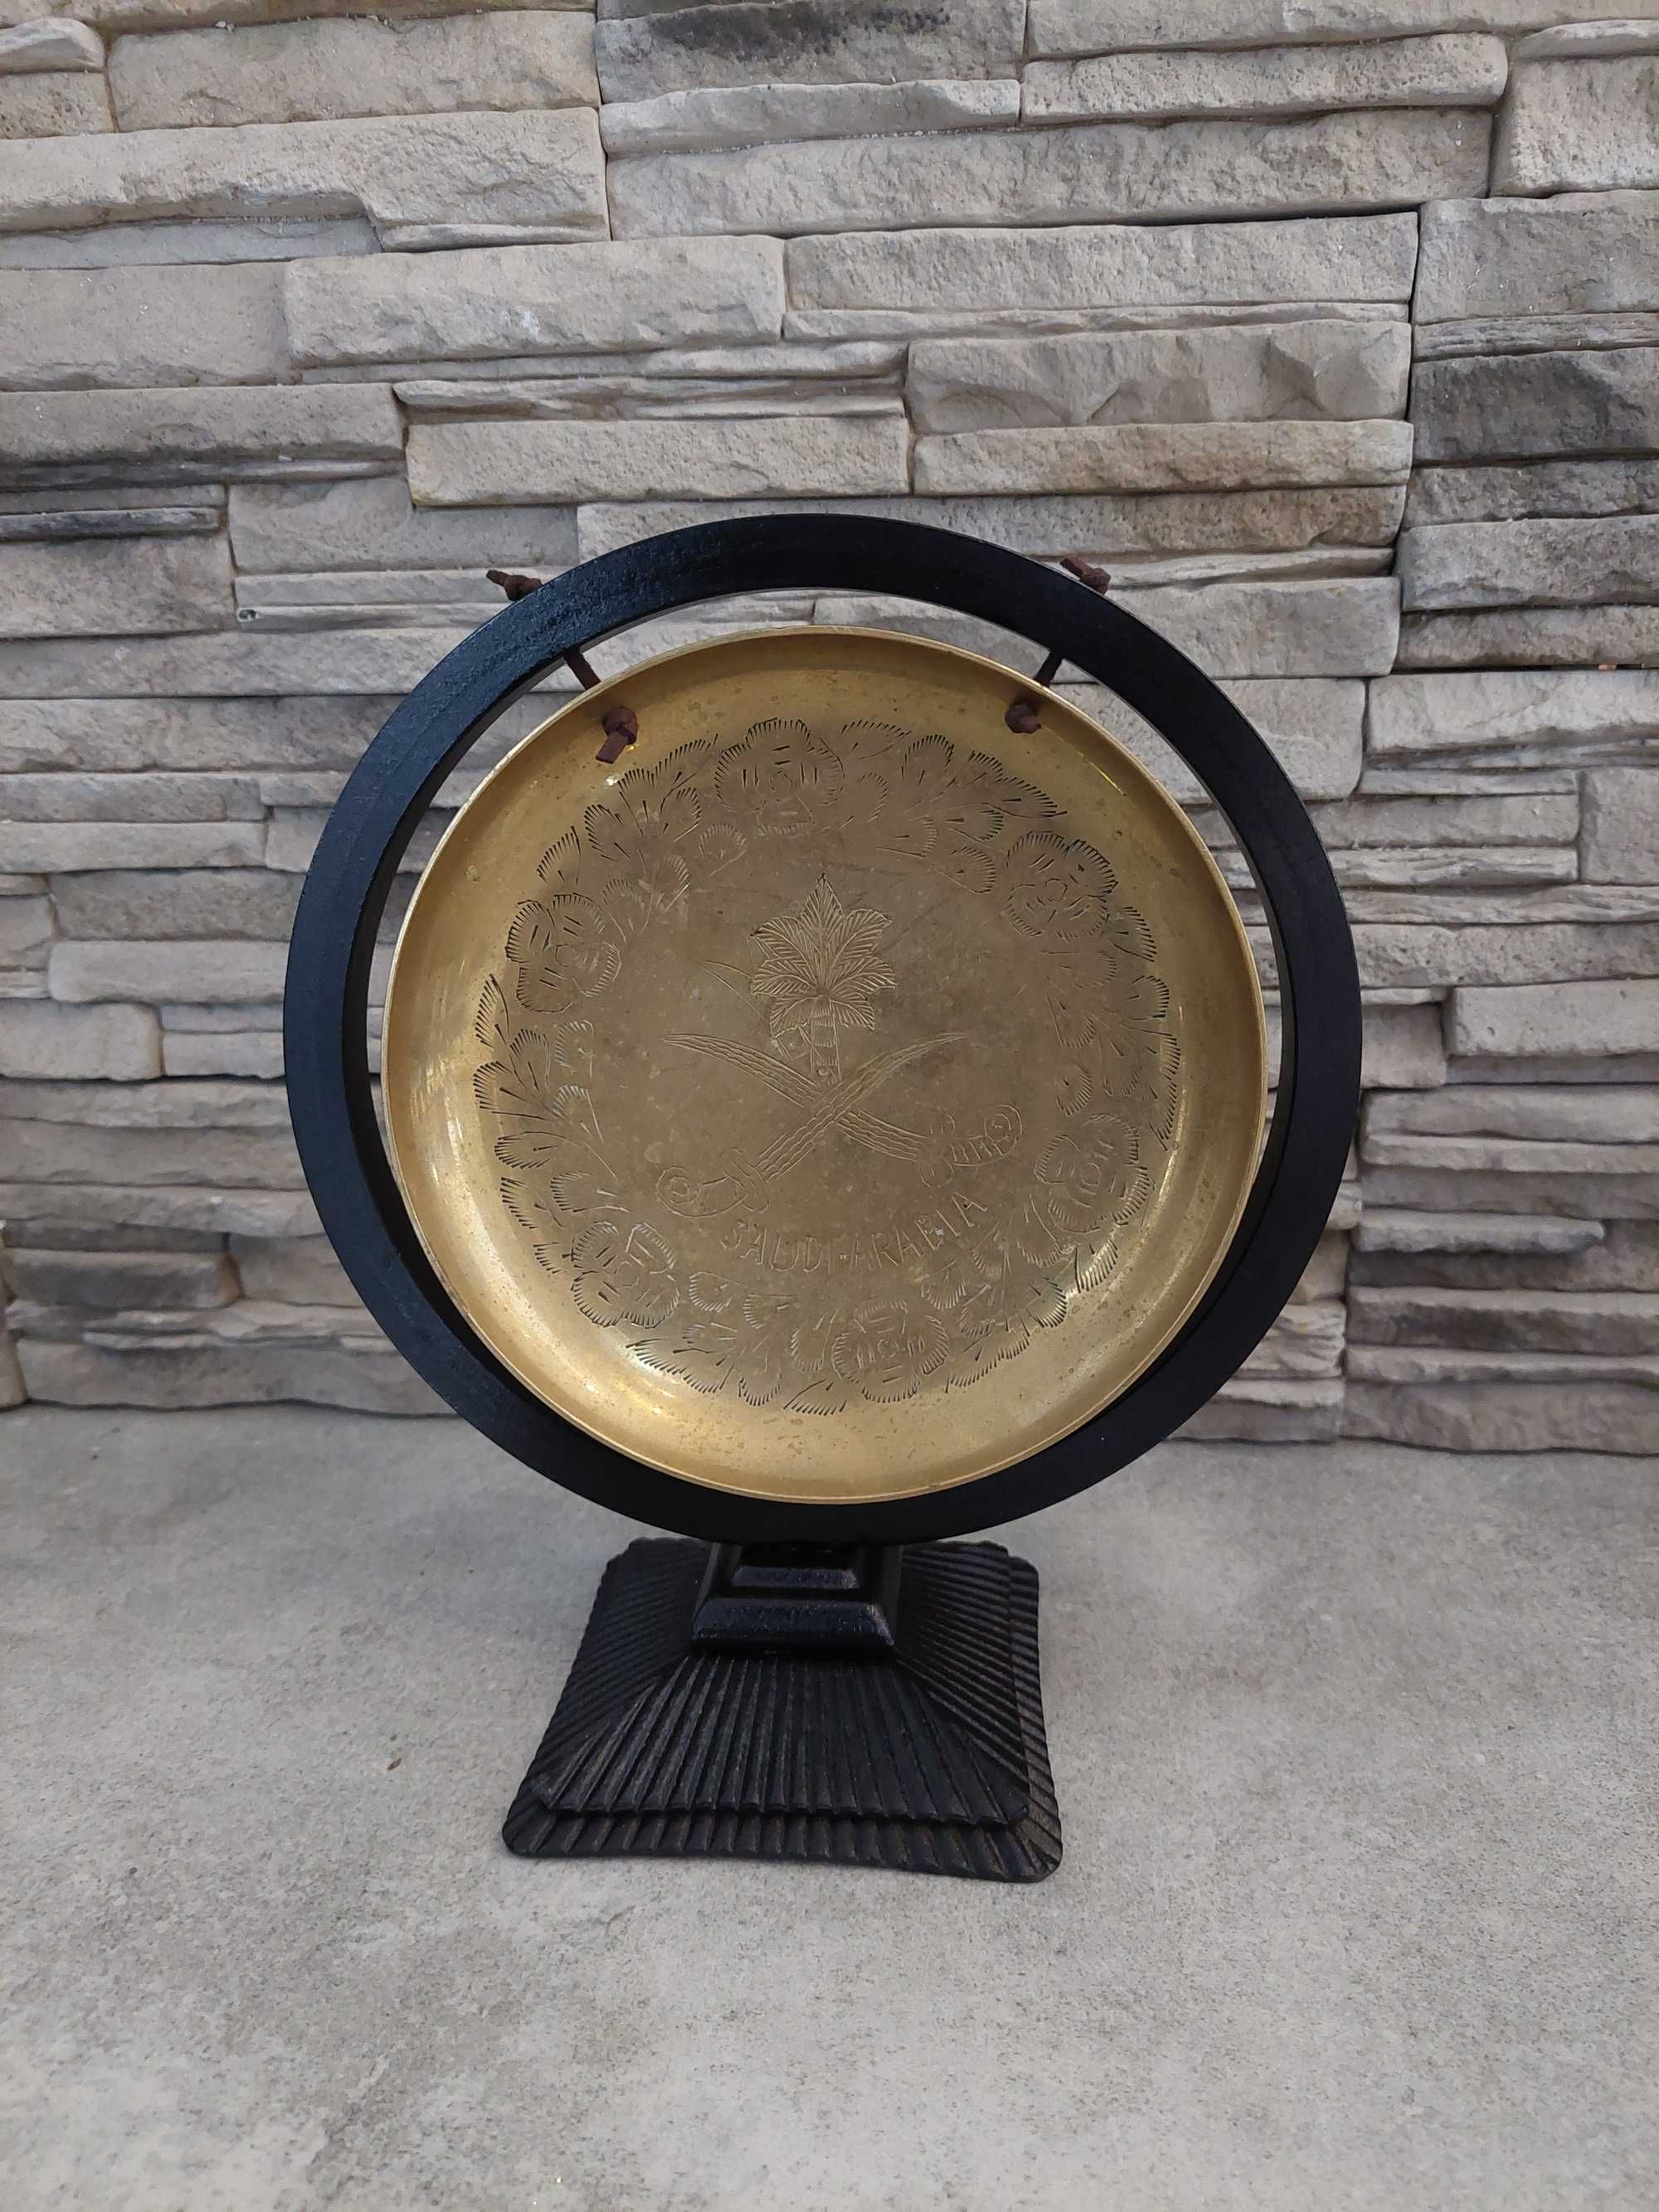 Mosiężny gong, stary gong, ciekawy przedmiot